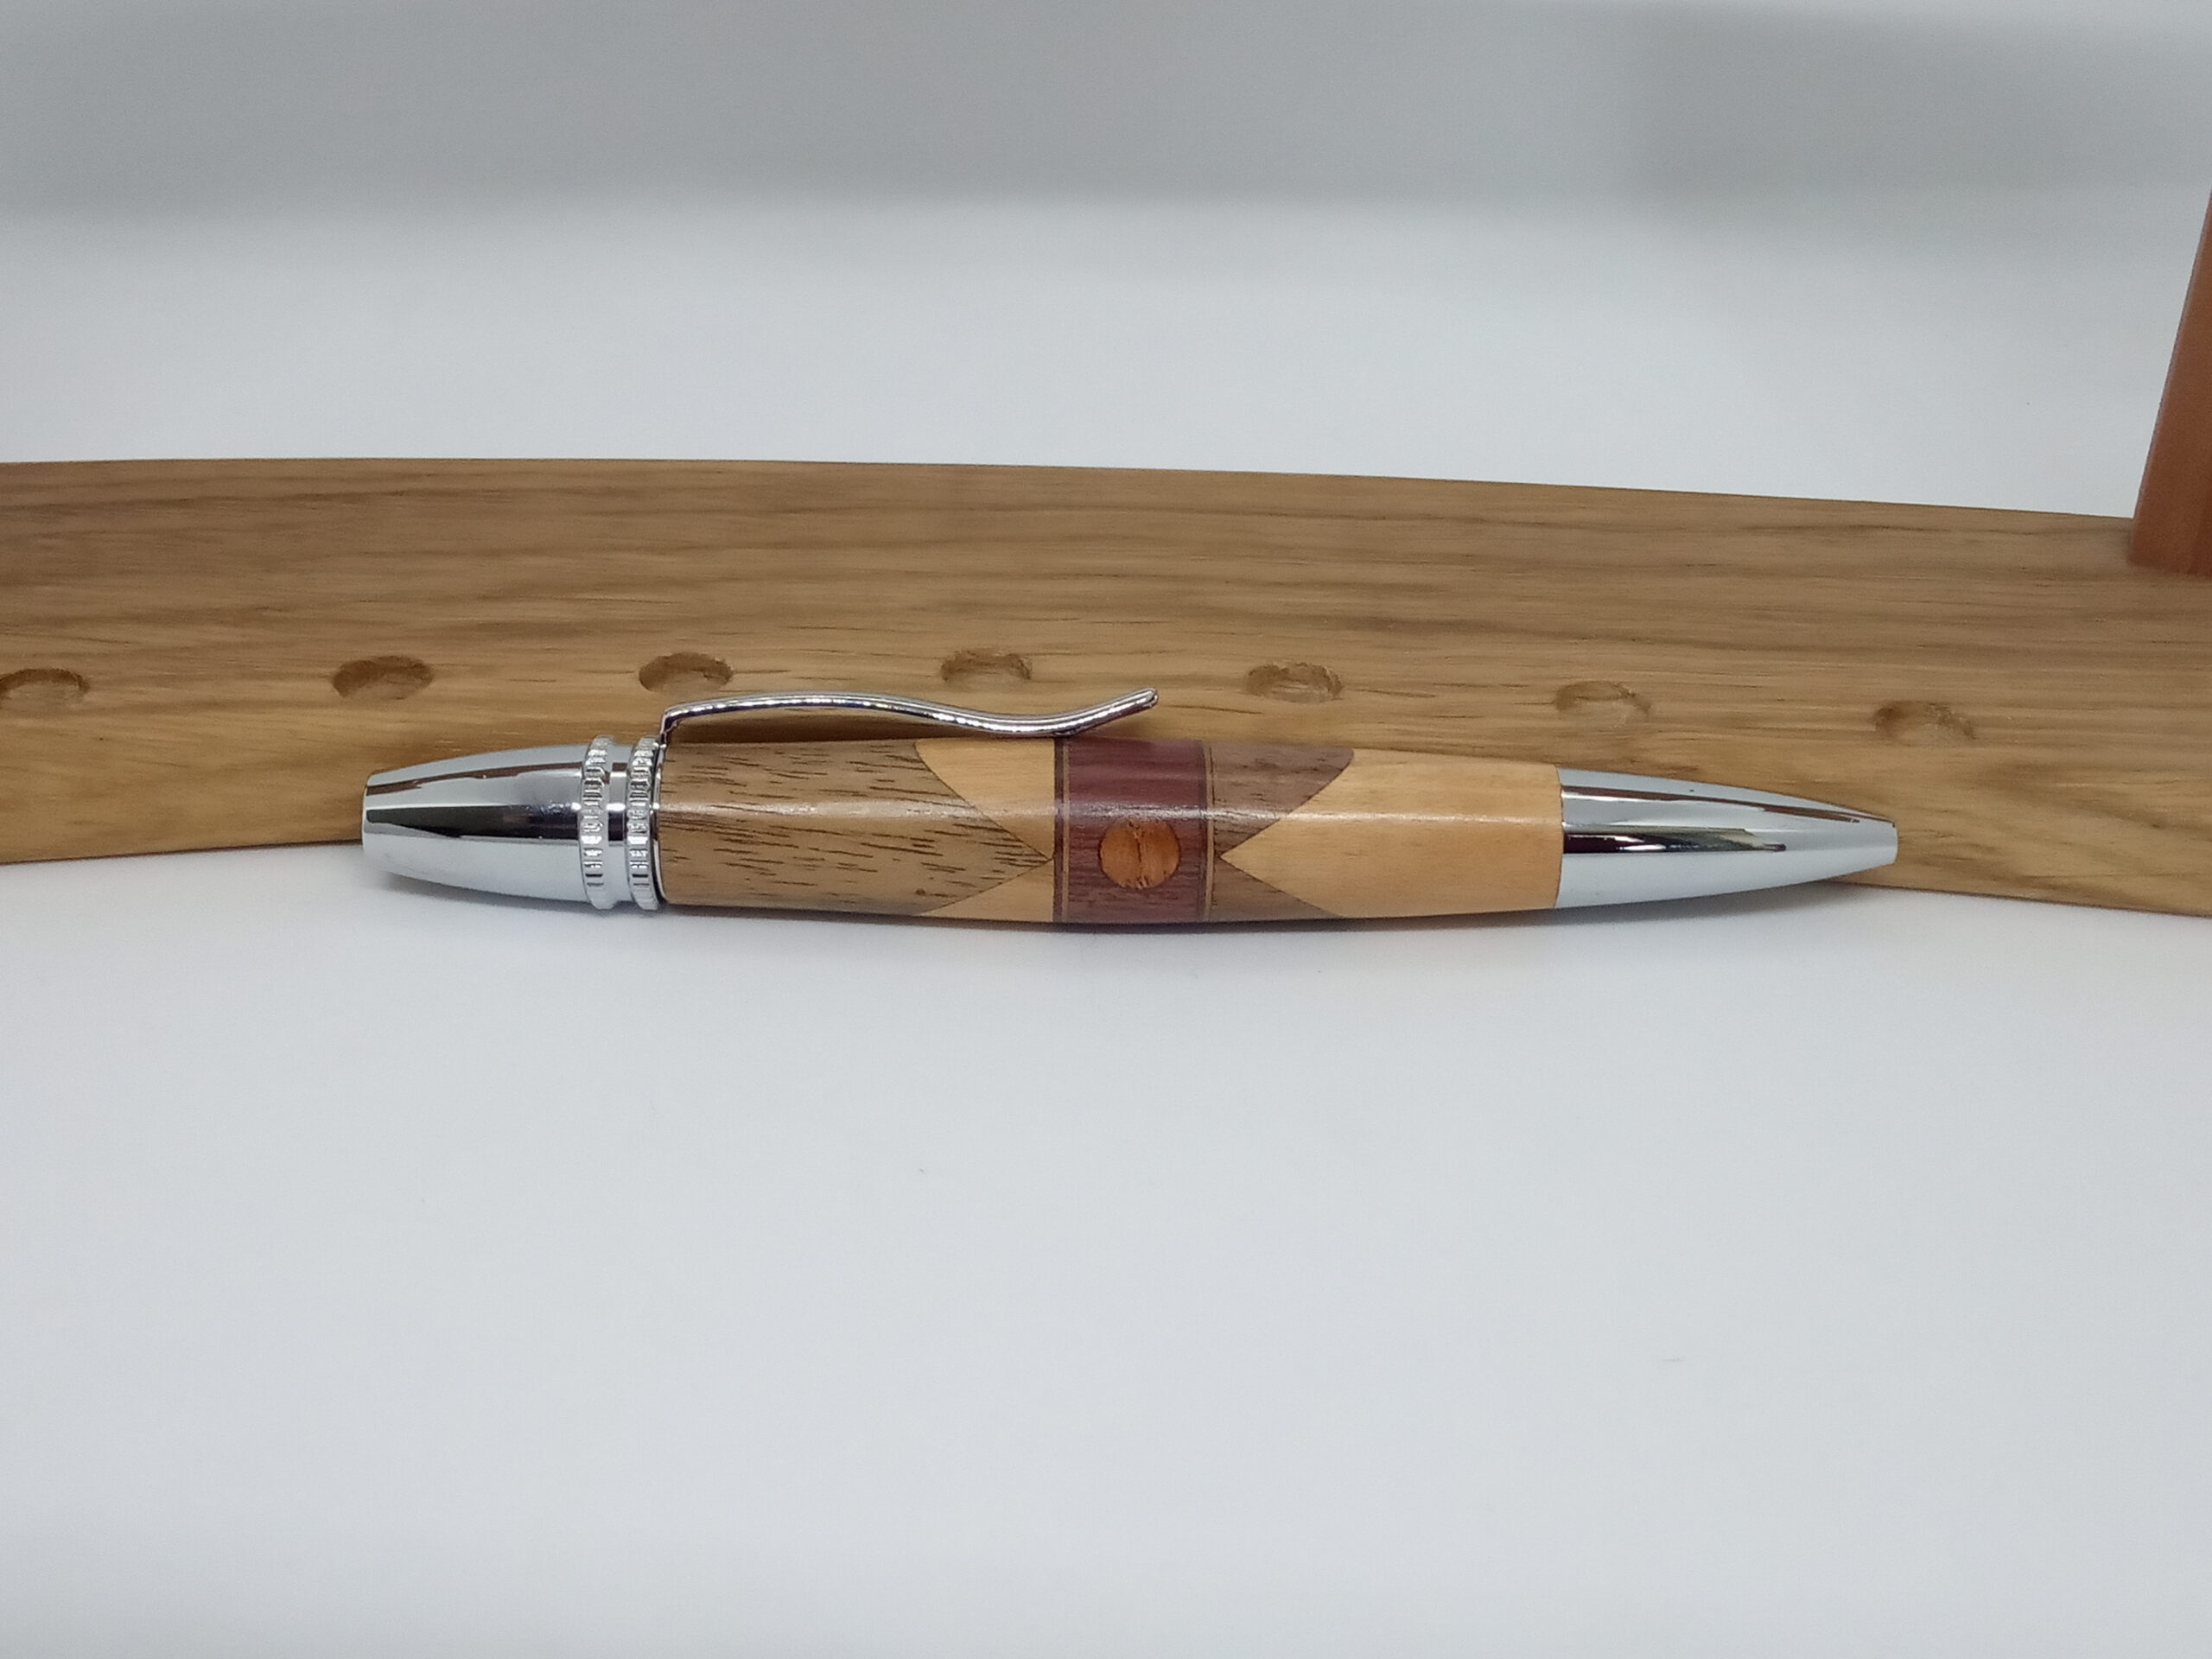 Stylo à bille ligne Cigare n°3 - le stylo et le bois - Création de